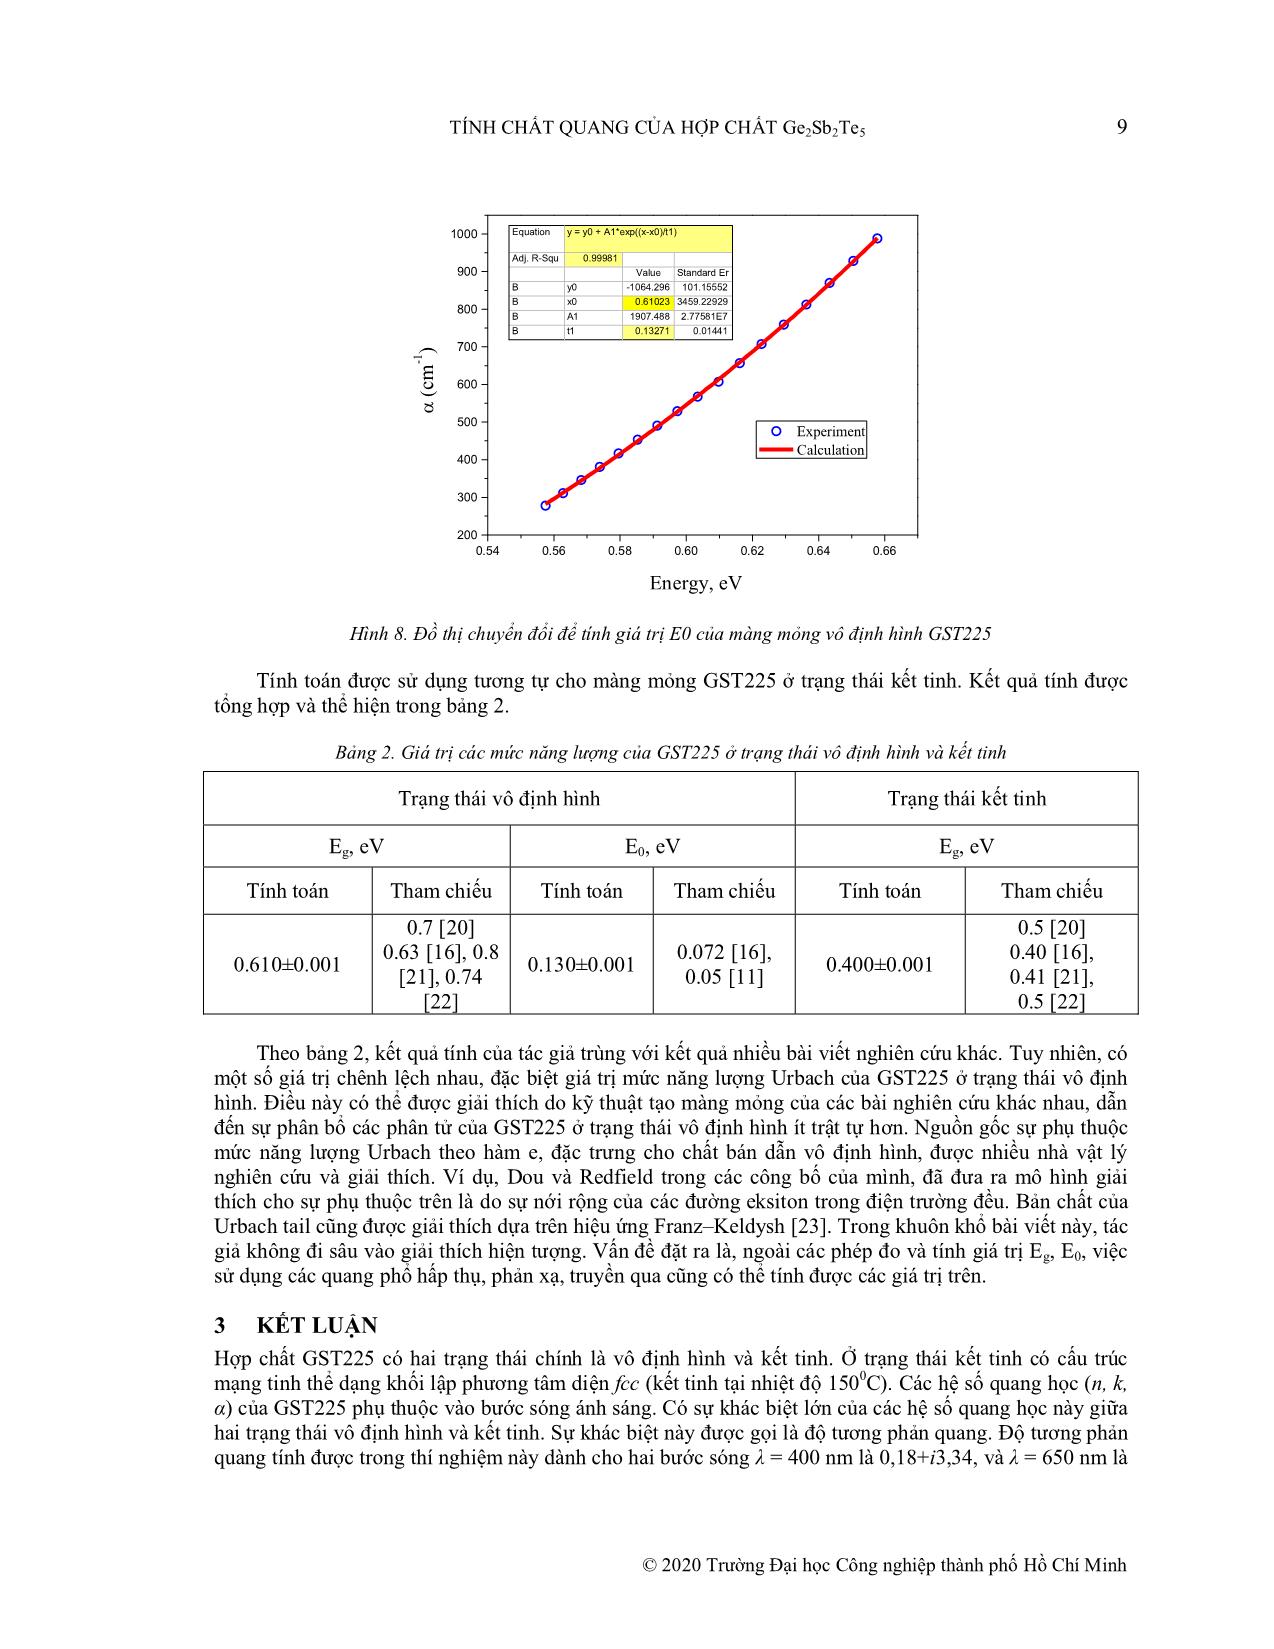 Tính chất quang của hợp chất Ge₂Sb₂Te₅ trang 7